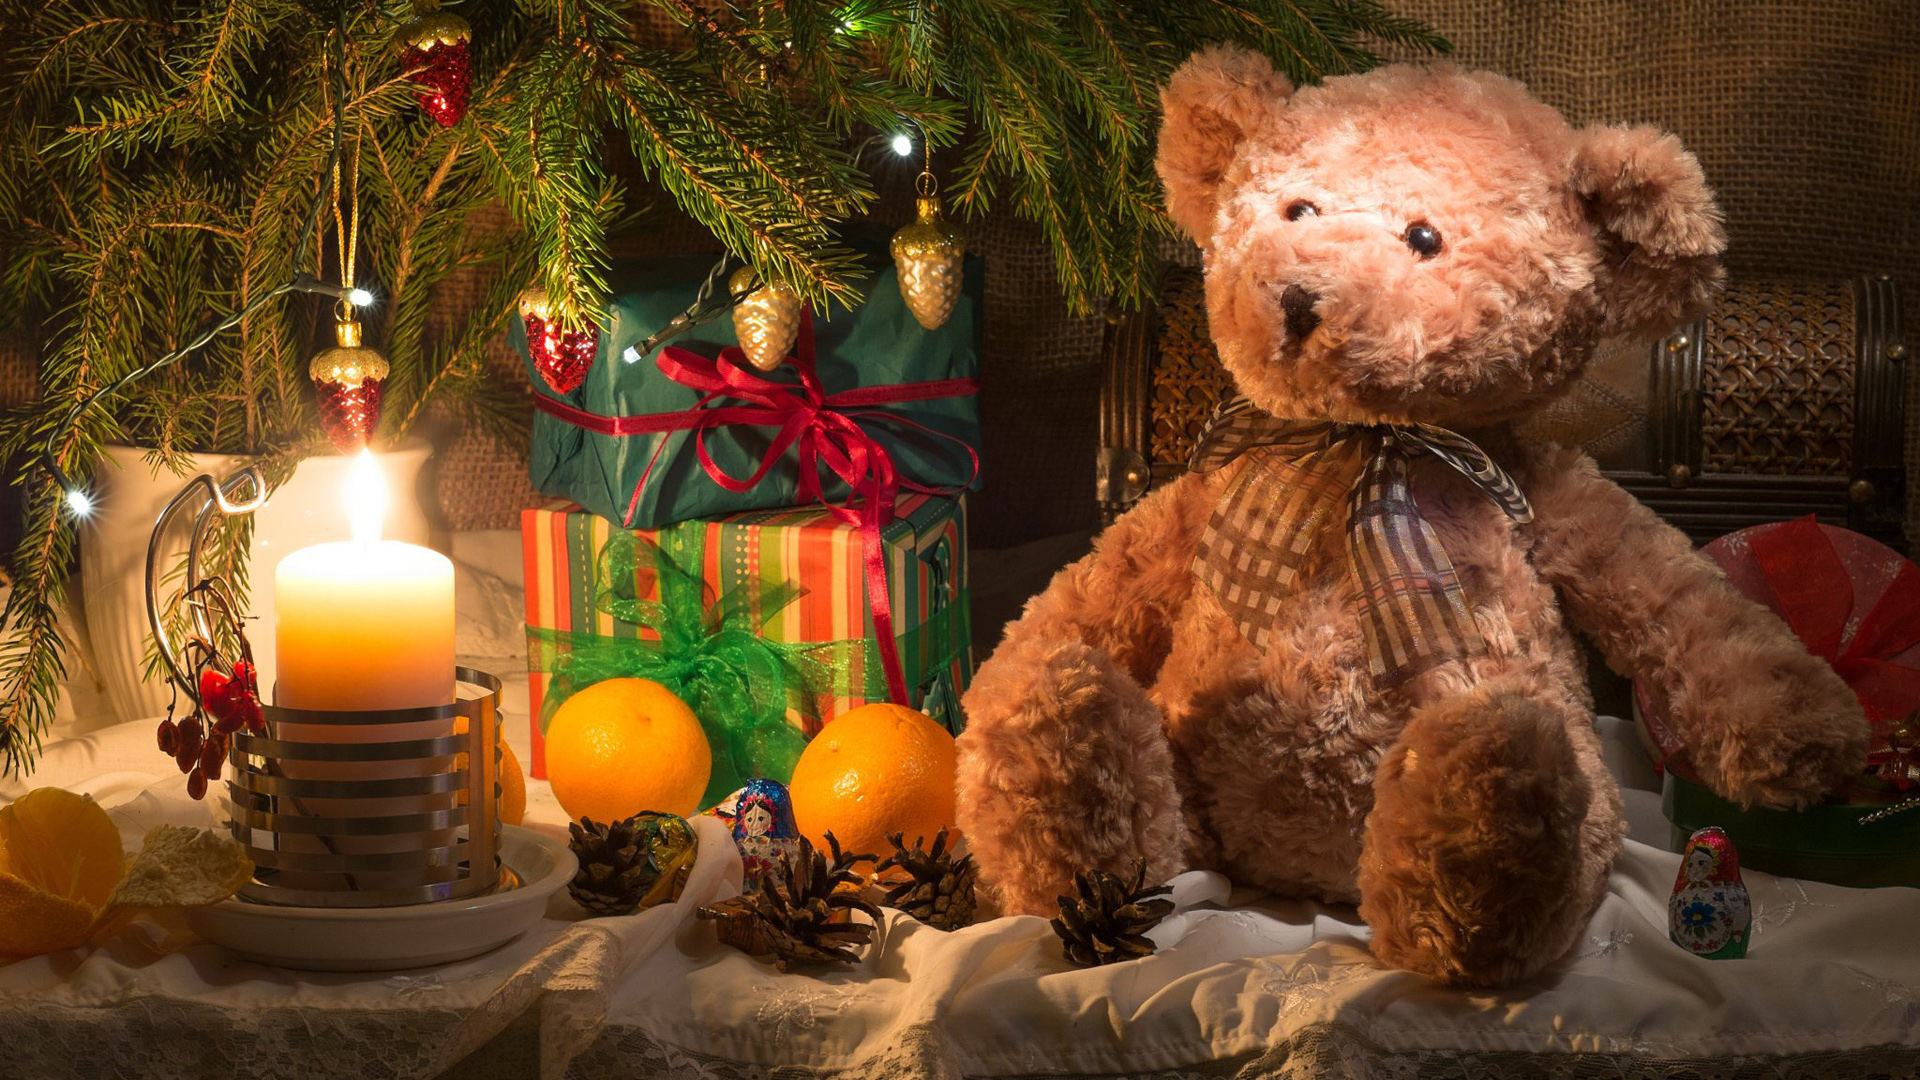 桔子,麻布,水果,蜡烛,圣诞树,礼物,玩具熊,云杉,树枝,桌面壁纸